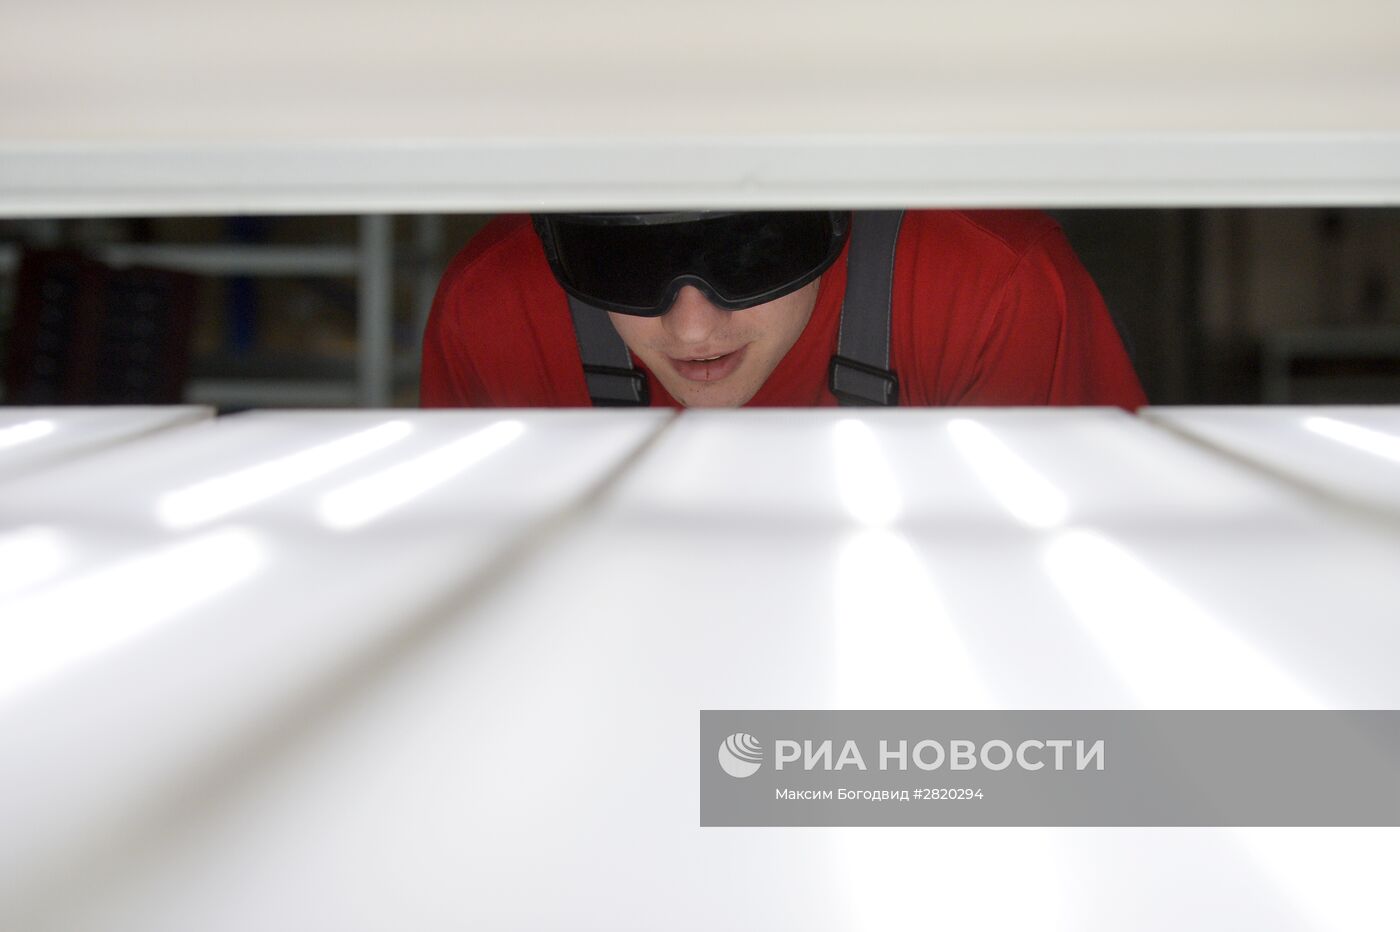 Производство светодиодных светильников в Казани